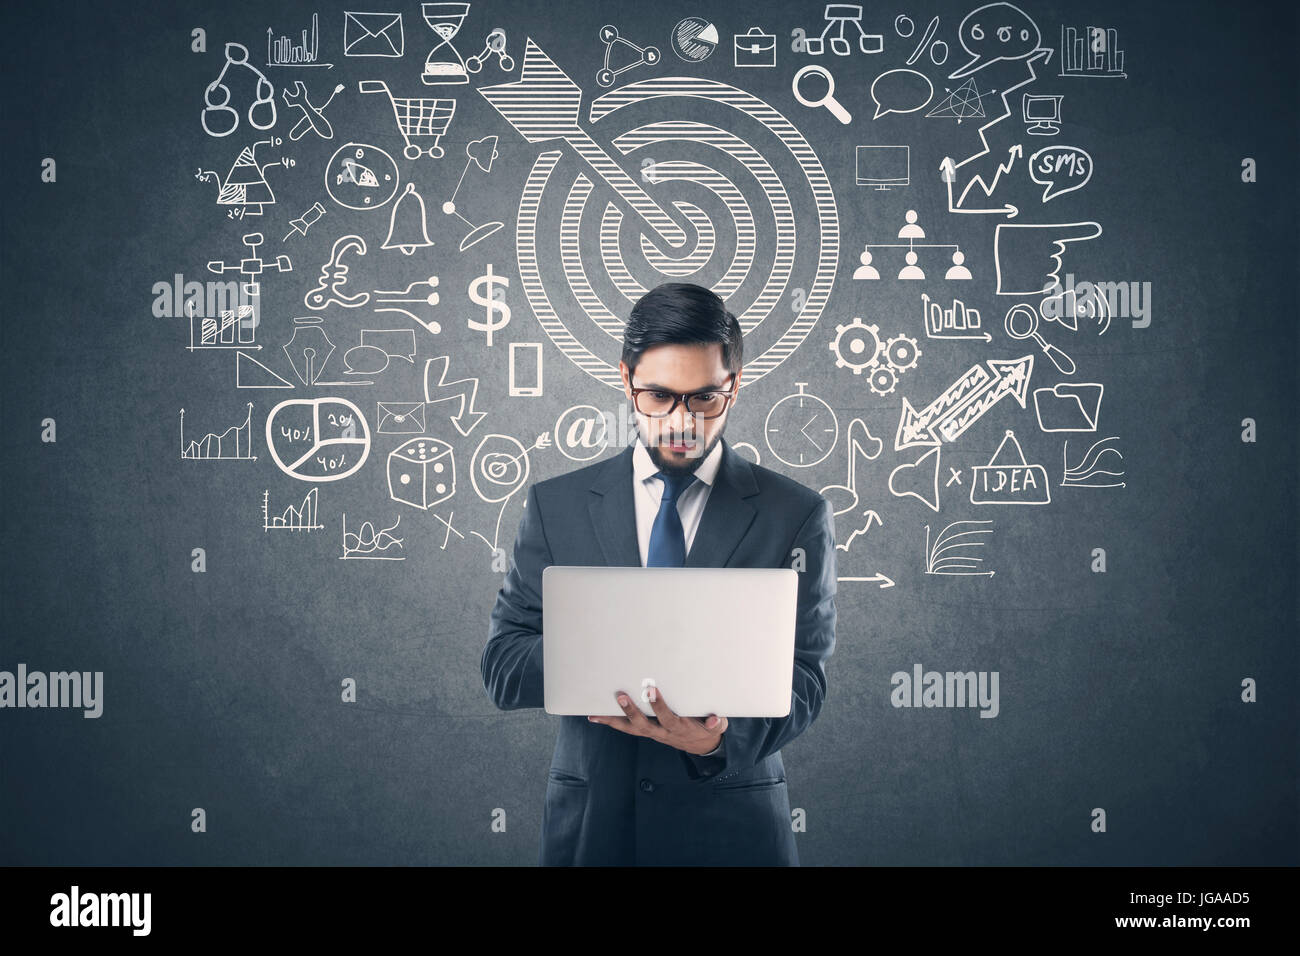 Businessman using laptop in front of blackboard avec icônes d'affaires et de technologie Banque D'Images